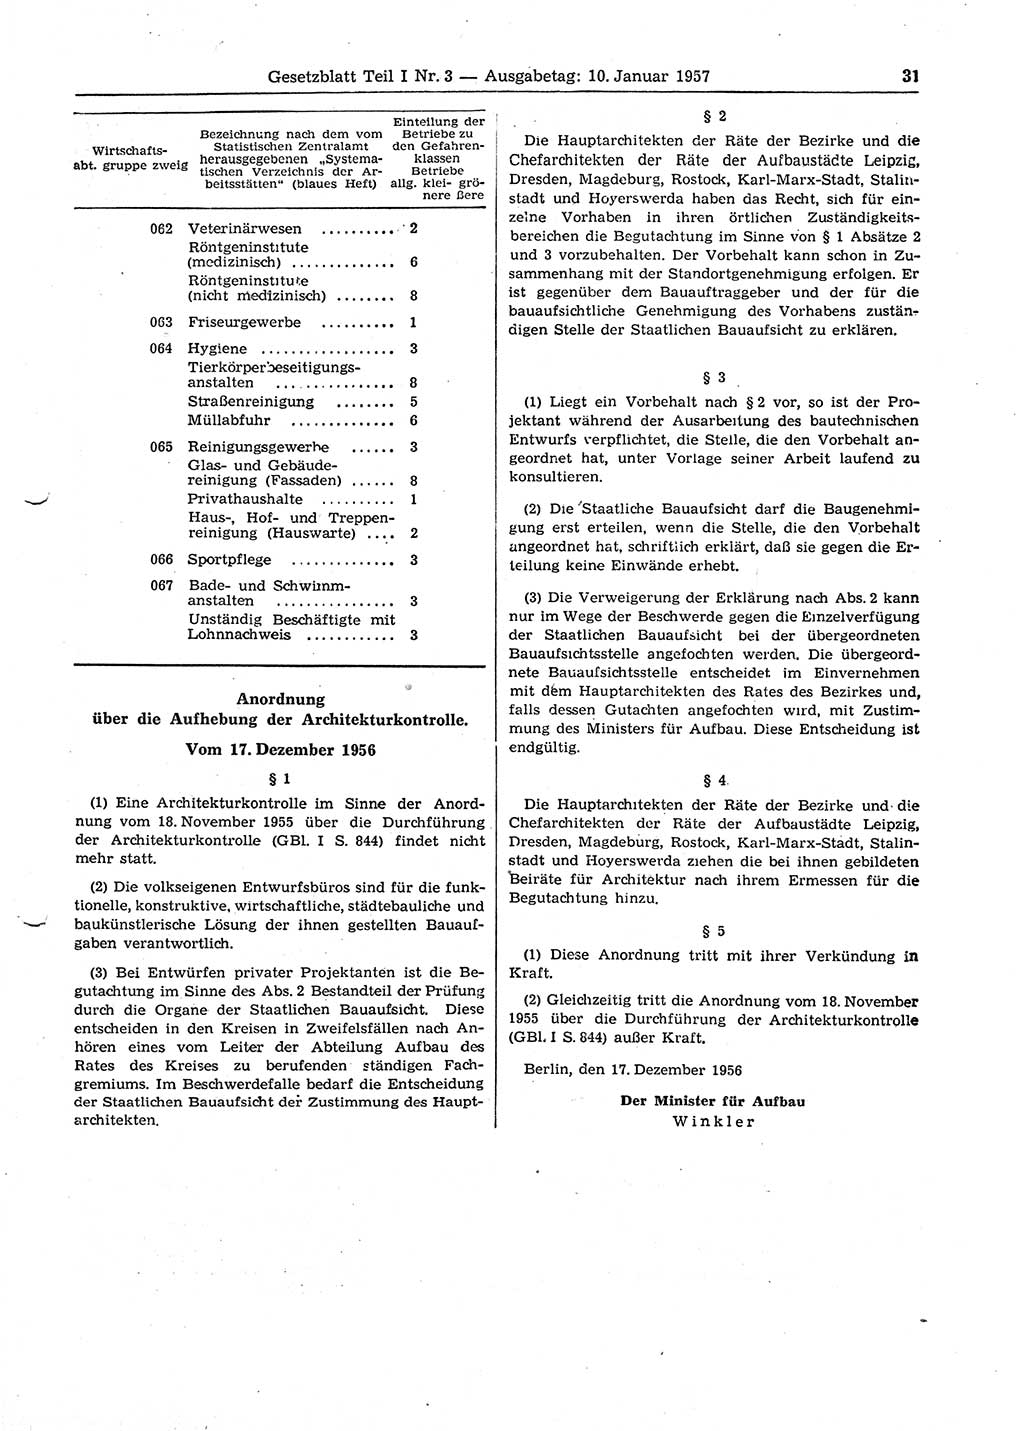 Gesetzblatt (GBl.) der Deutschen Demokratischen Republik (DDR) Teil Ⅰ 1957, Seite 31 (GBl. DDR Ⅰ 1957, S. 31)